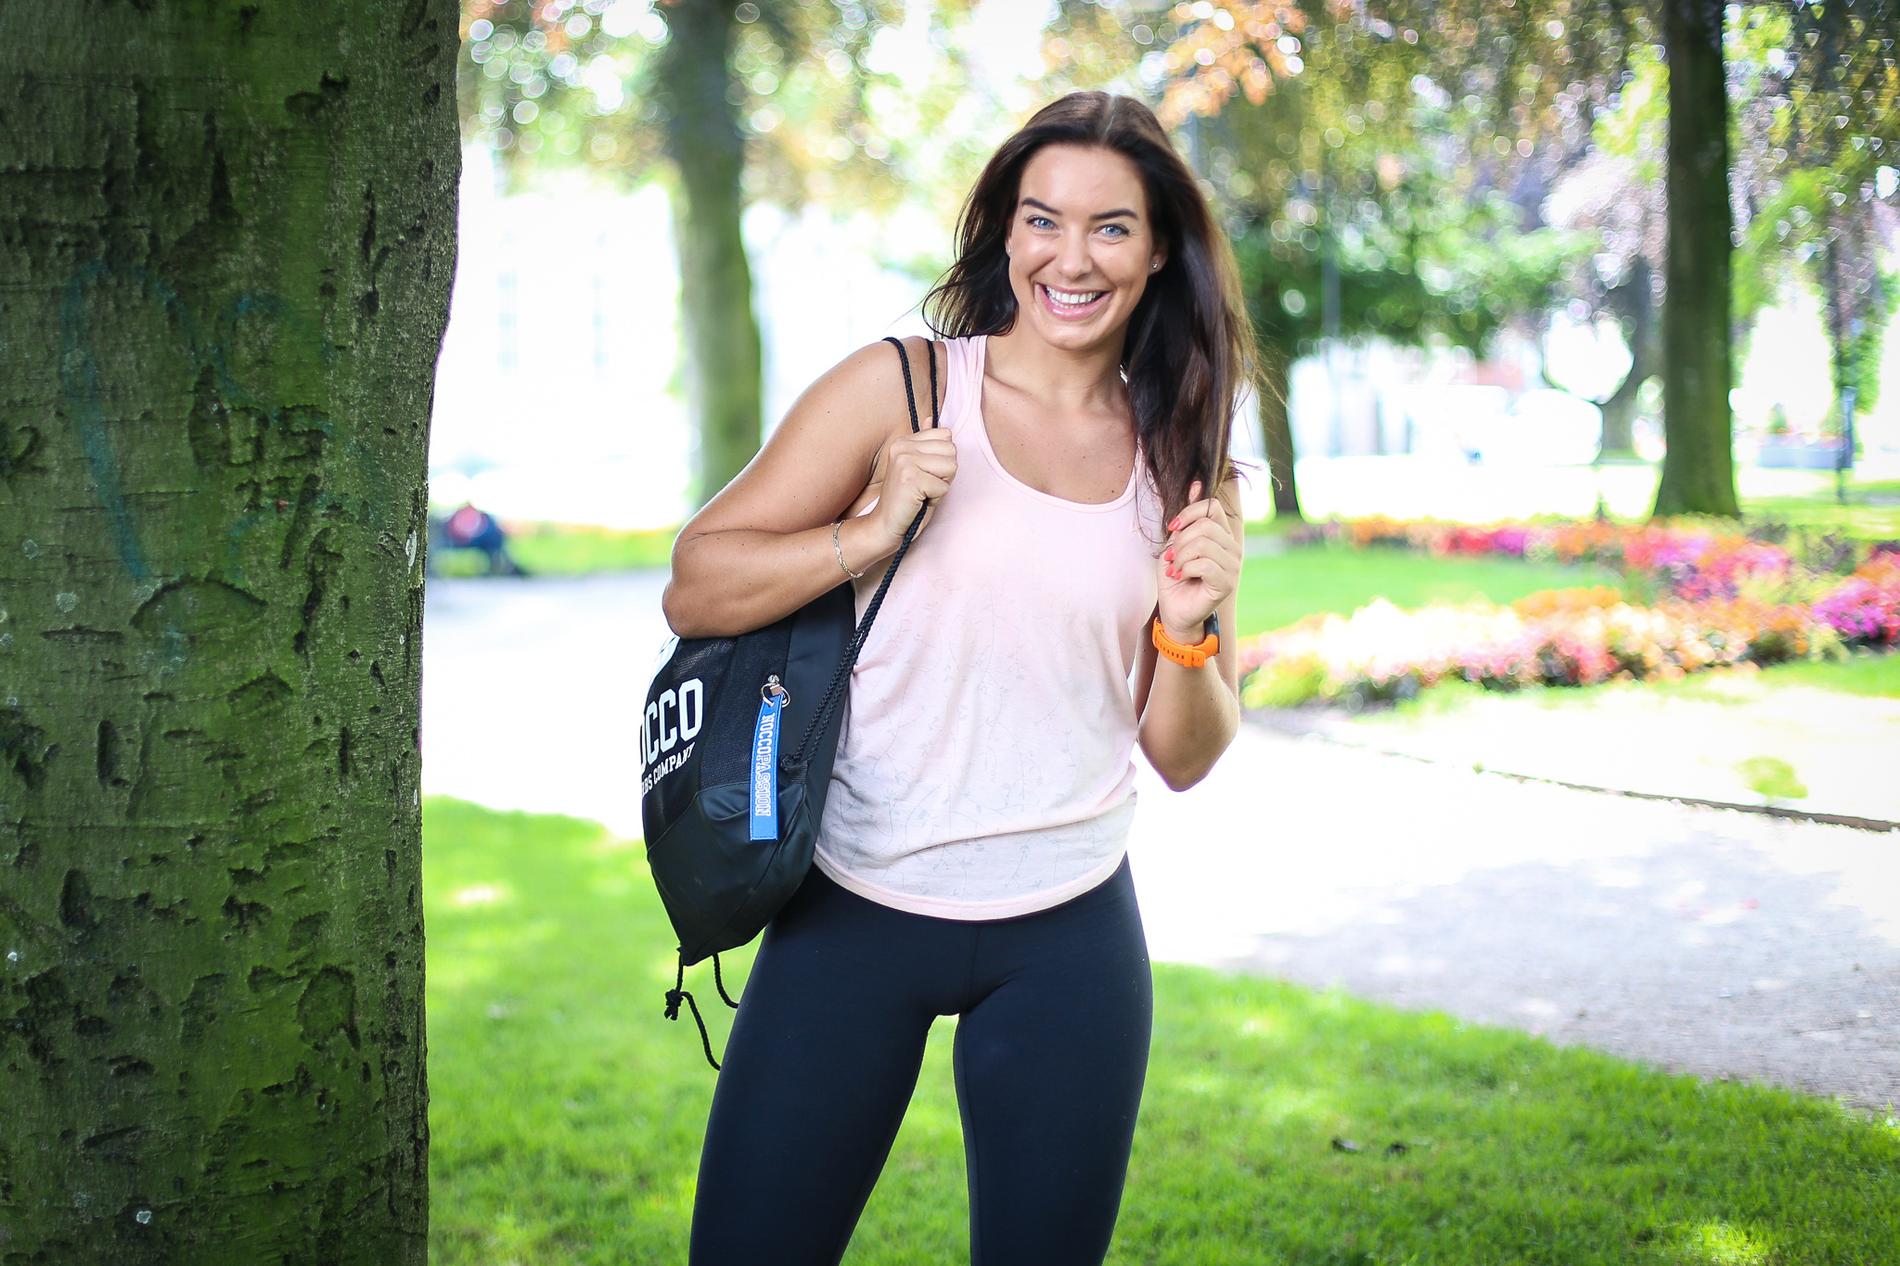 Nå som sommeren har kommet til Sørlandet mener personlig trener Maren Erdvik (30) at du bør utnytte aktivitetsparkene i ditt nærområde. Alt du trenger? Deg selv og hennes utvalgte øvelser for å komme i form.